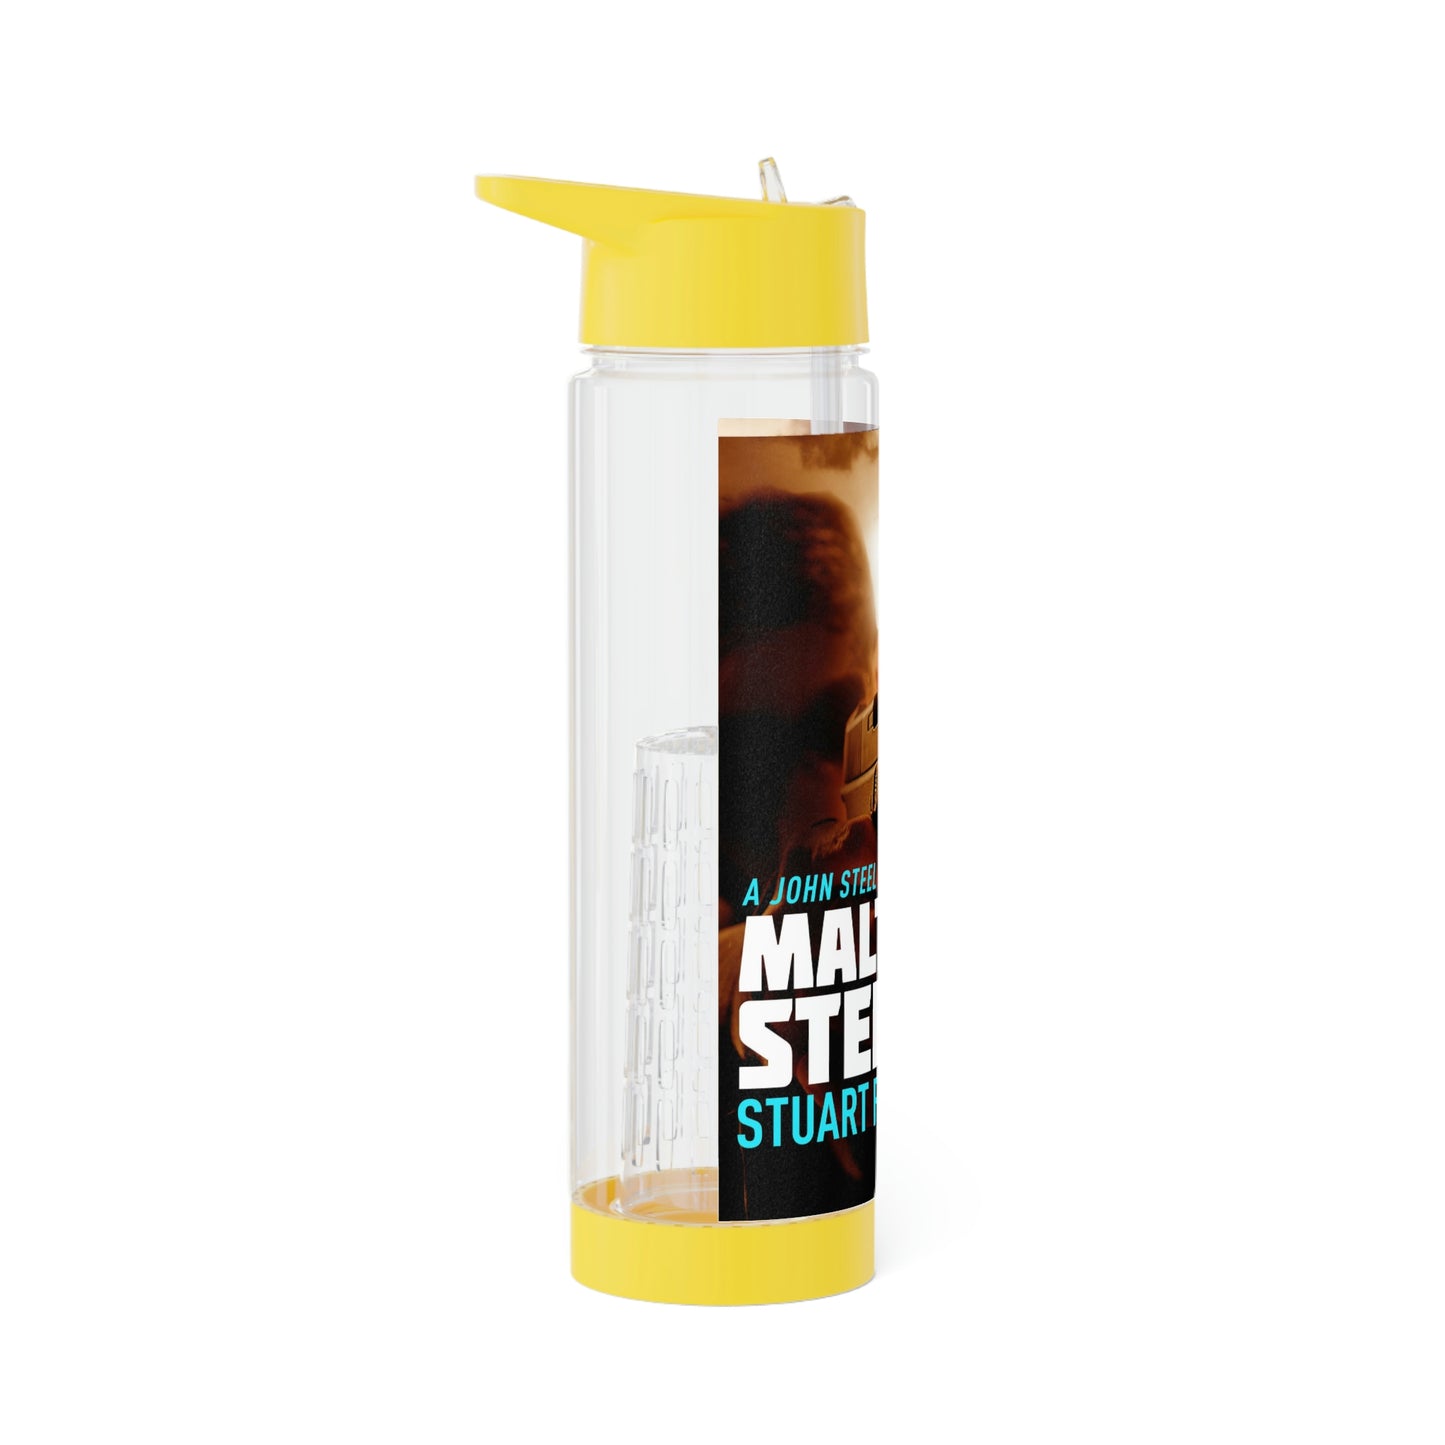 Maltese Steel - Infuser Water Bottle